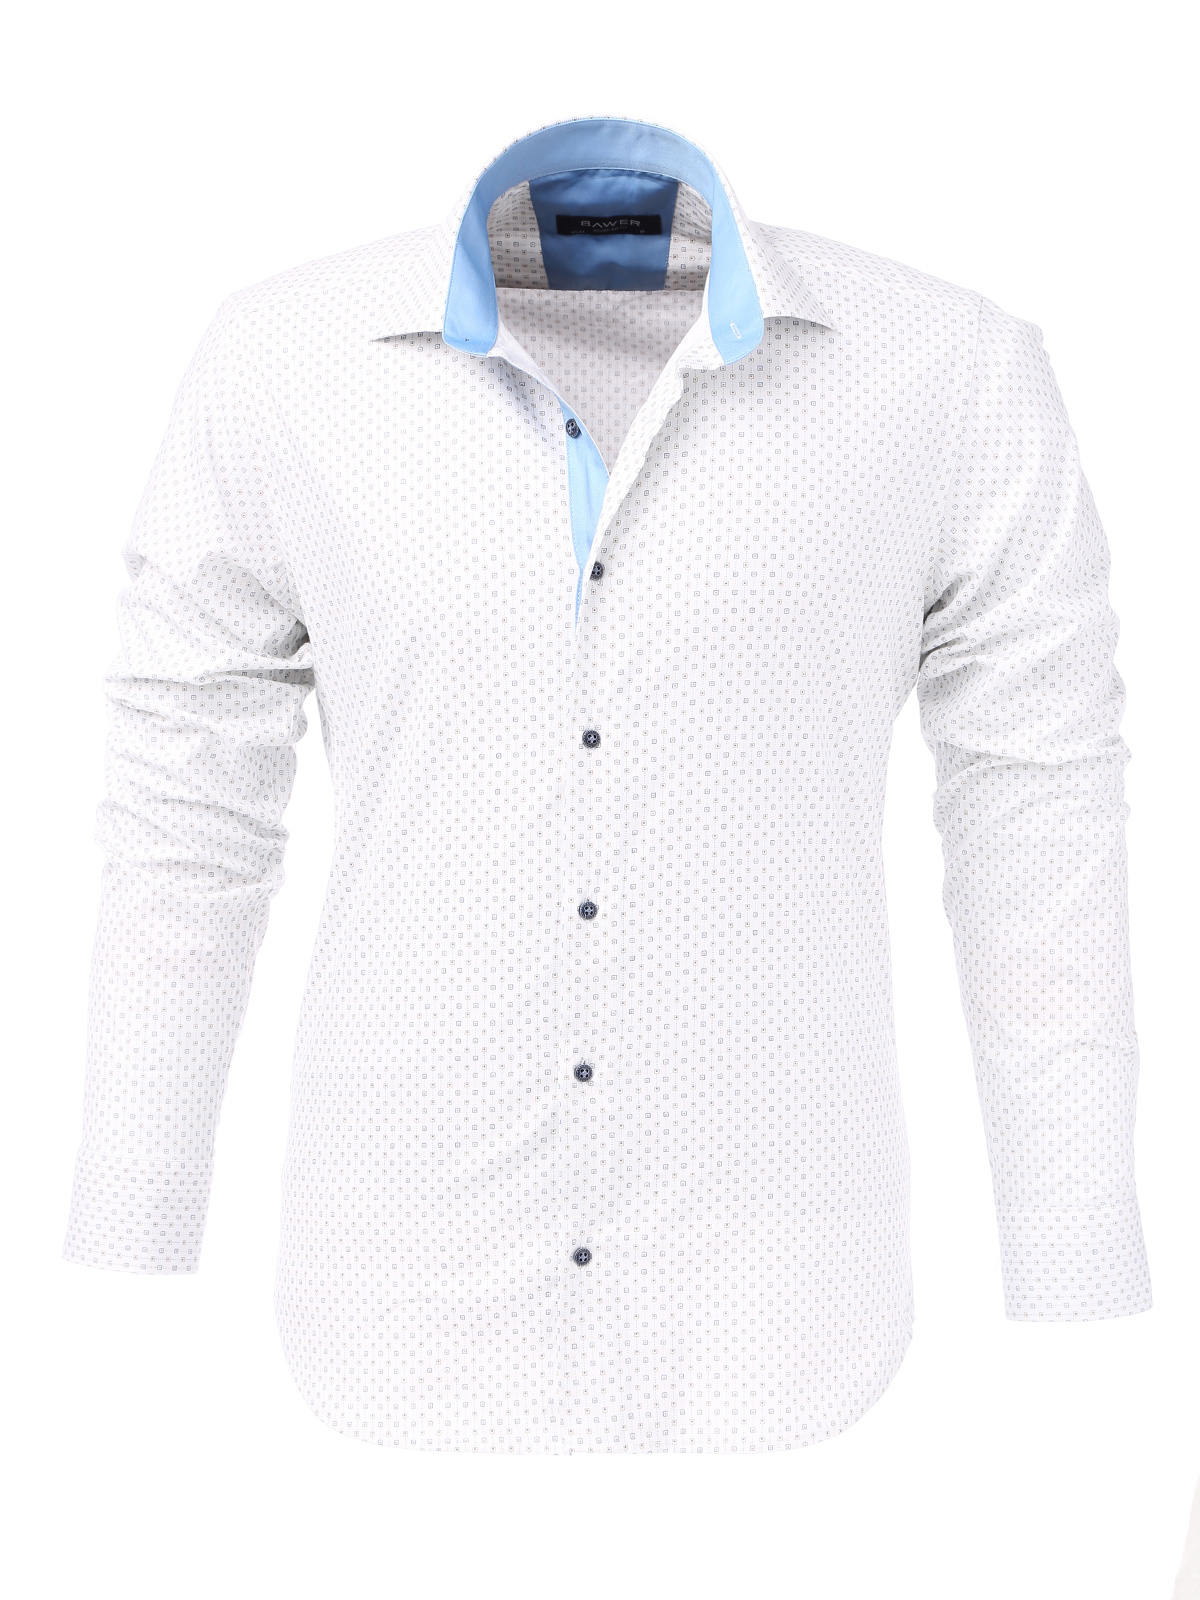 картинка Рубашка белая с голубым воротником от магазина Одежды+